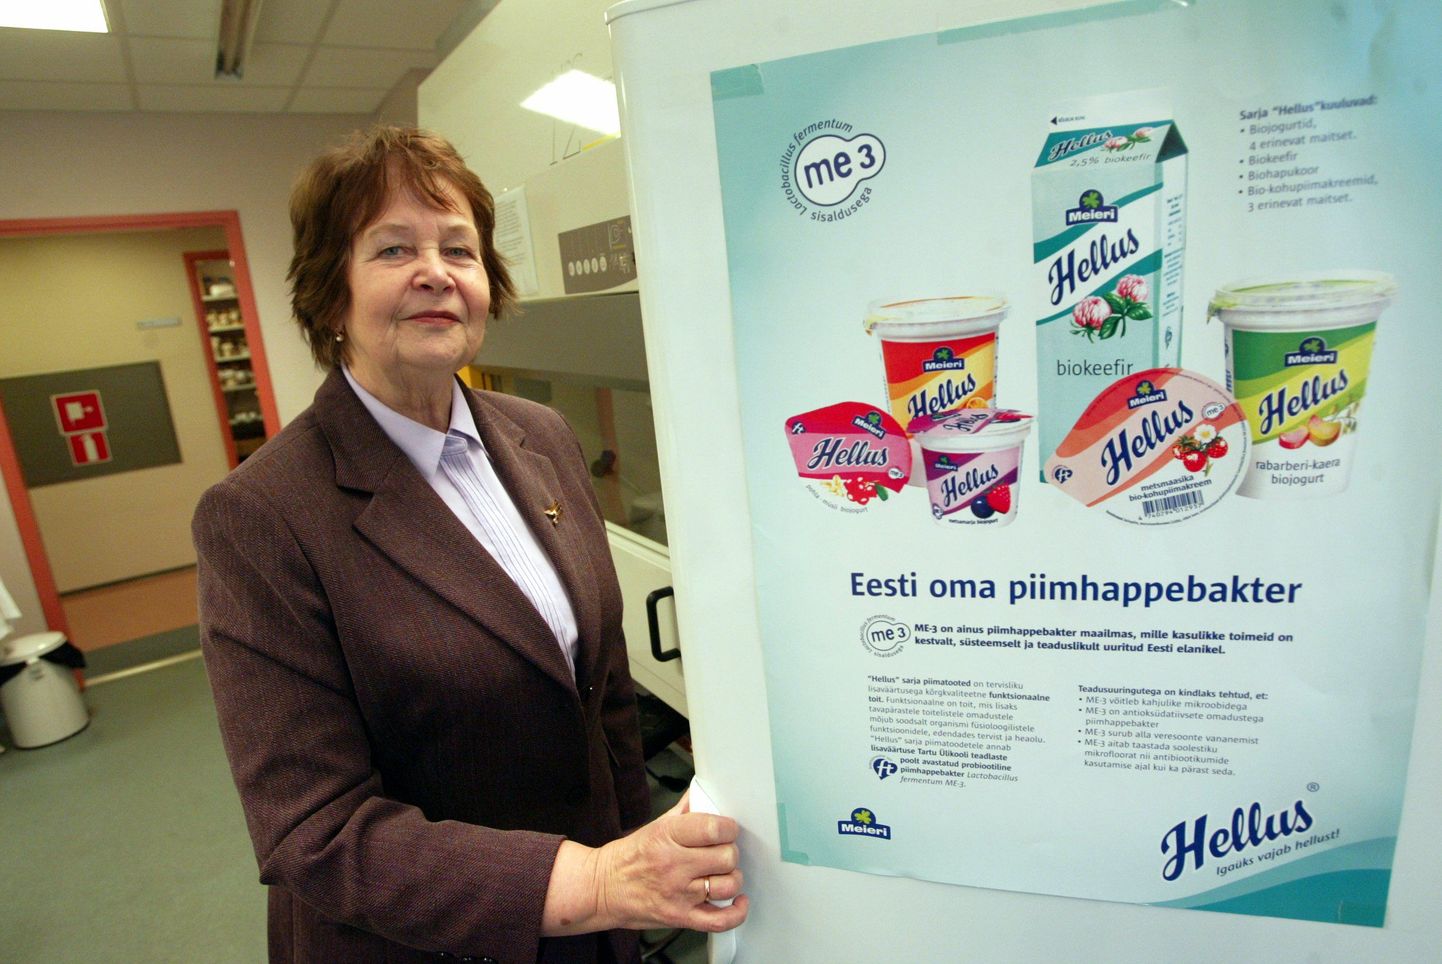 Tartu Ülikooli Mikrobioloogia instituudi juhataja Marika Mikelsaar näitab nn Helluse bakterit sisaldavaid tooteid.